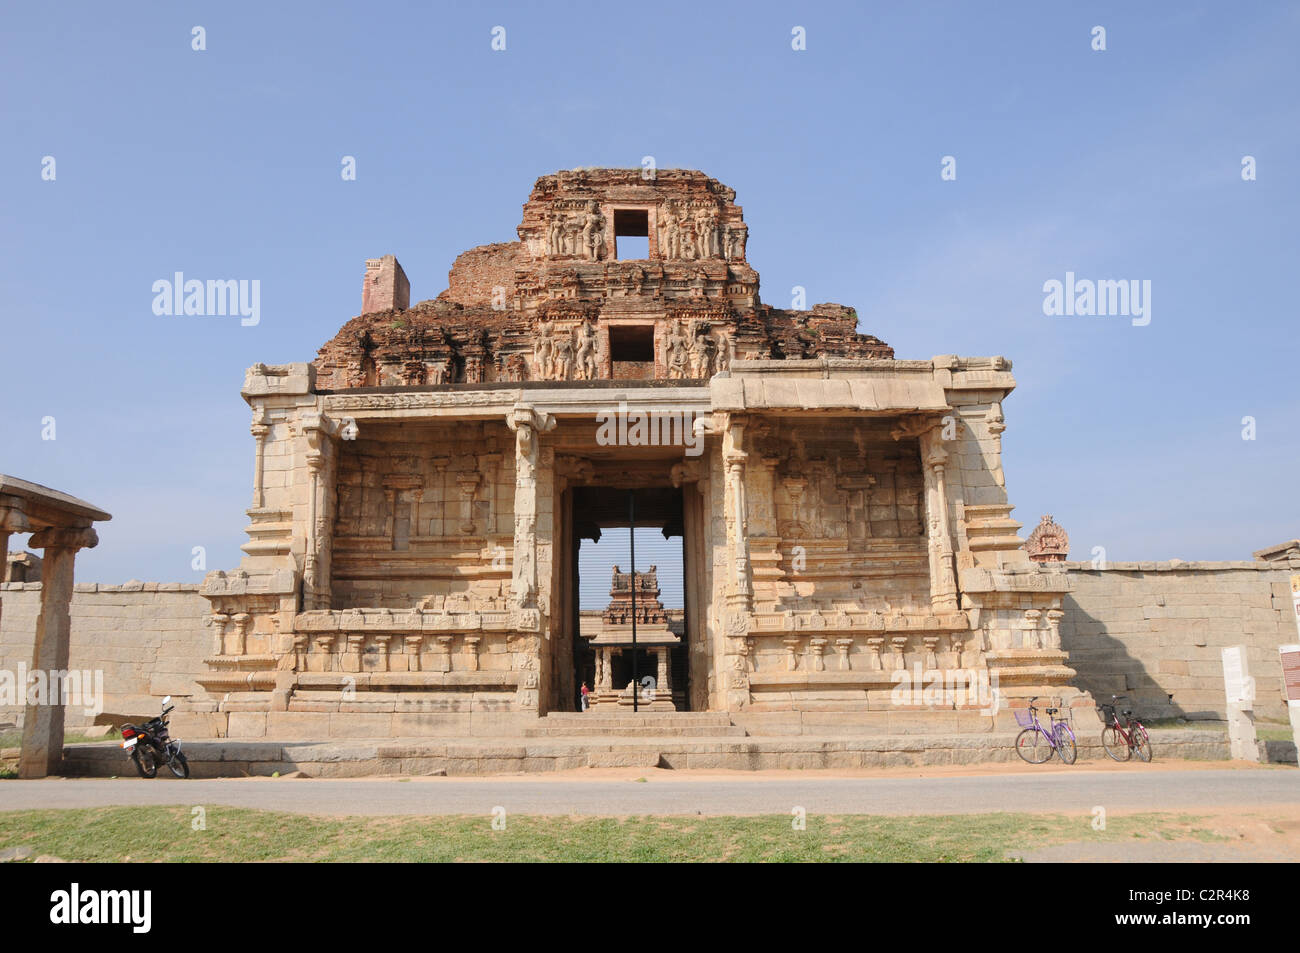 Krishna temple, un monument du patrimoine mondial Banque D'Images